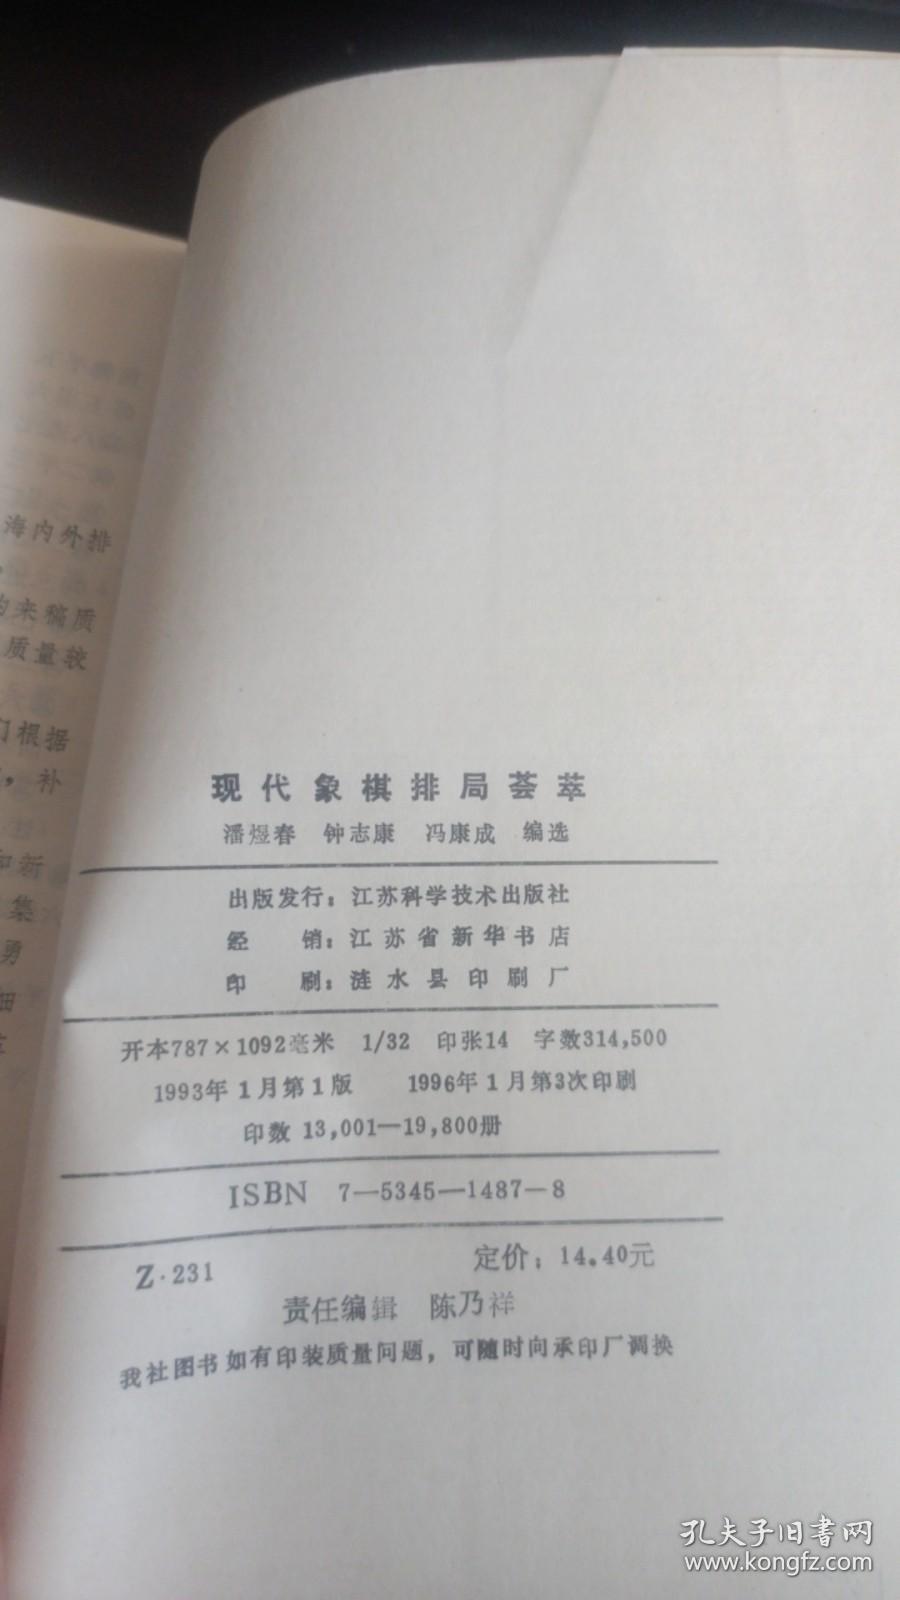 现代象棋排局荟萃 潘煜春 编选 江苏科学技术出版